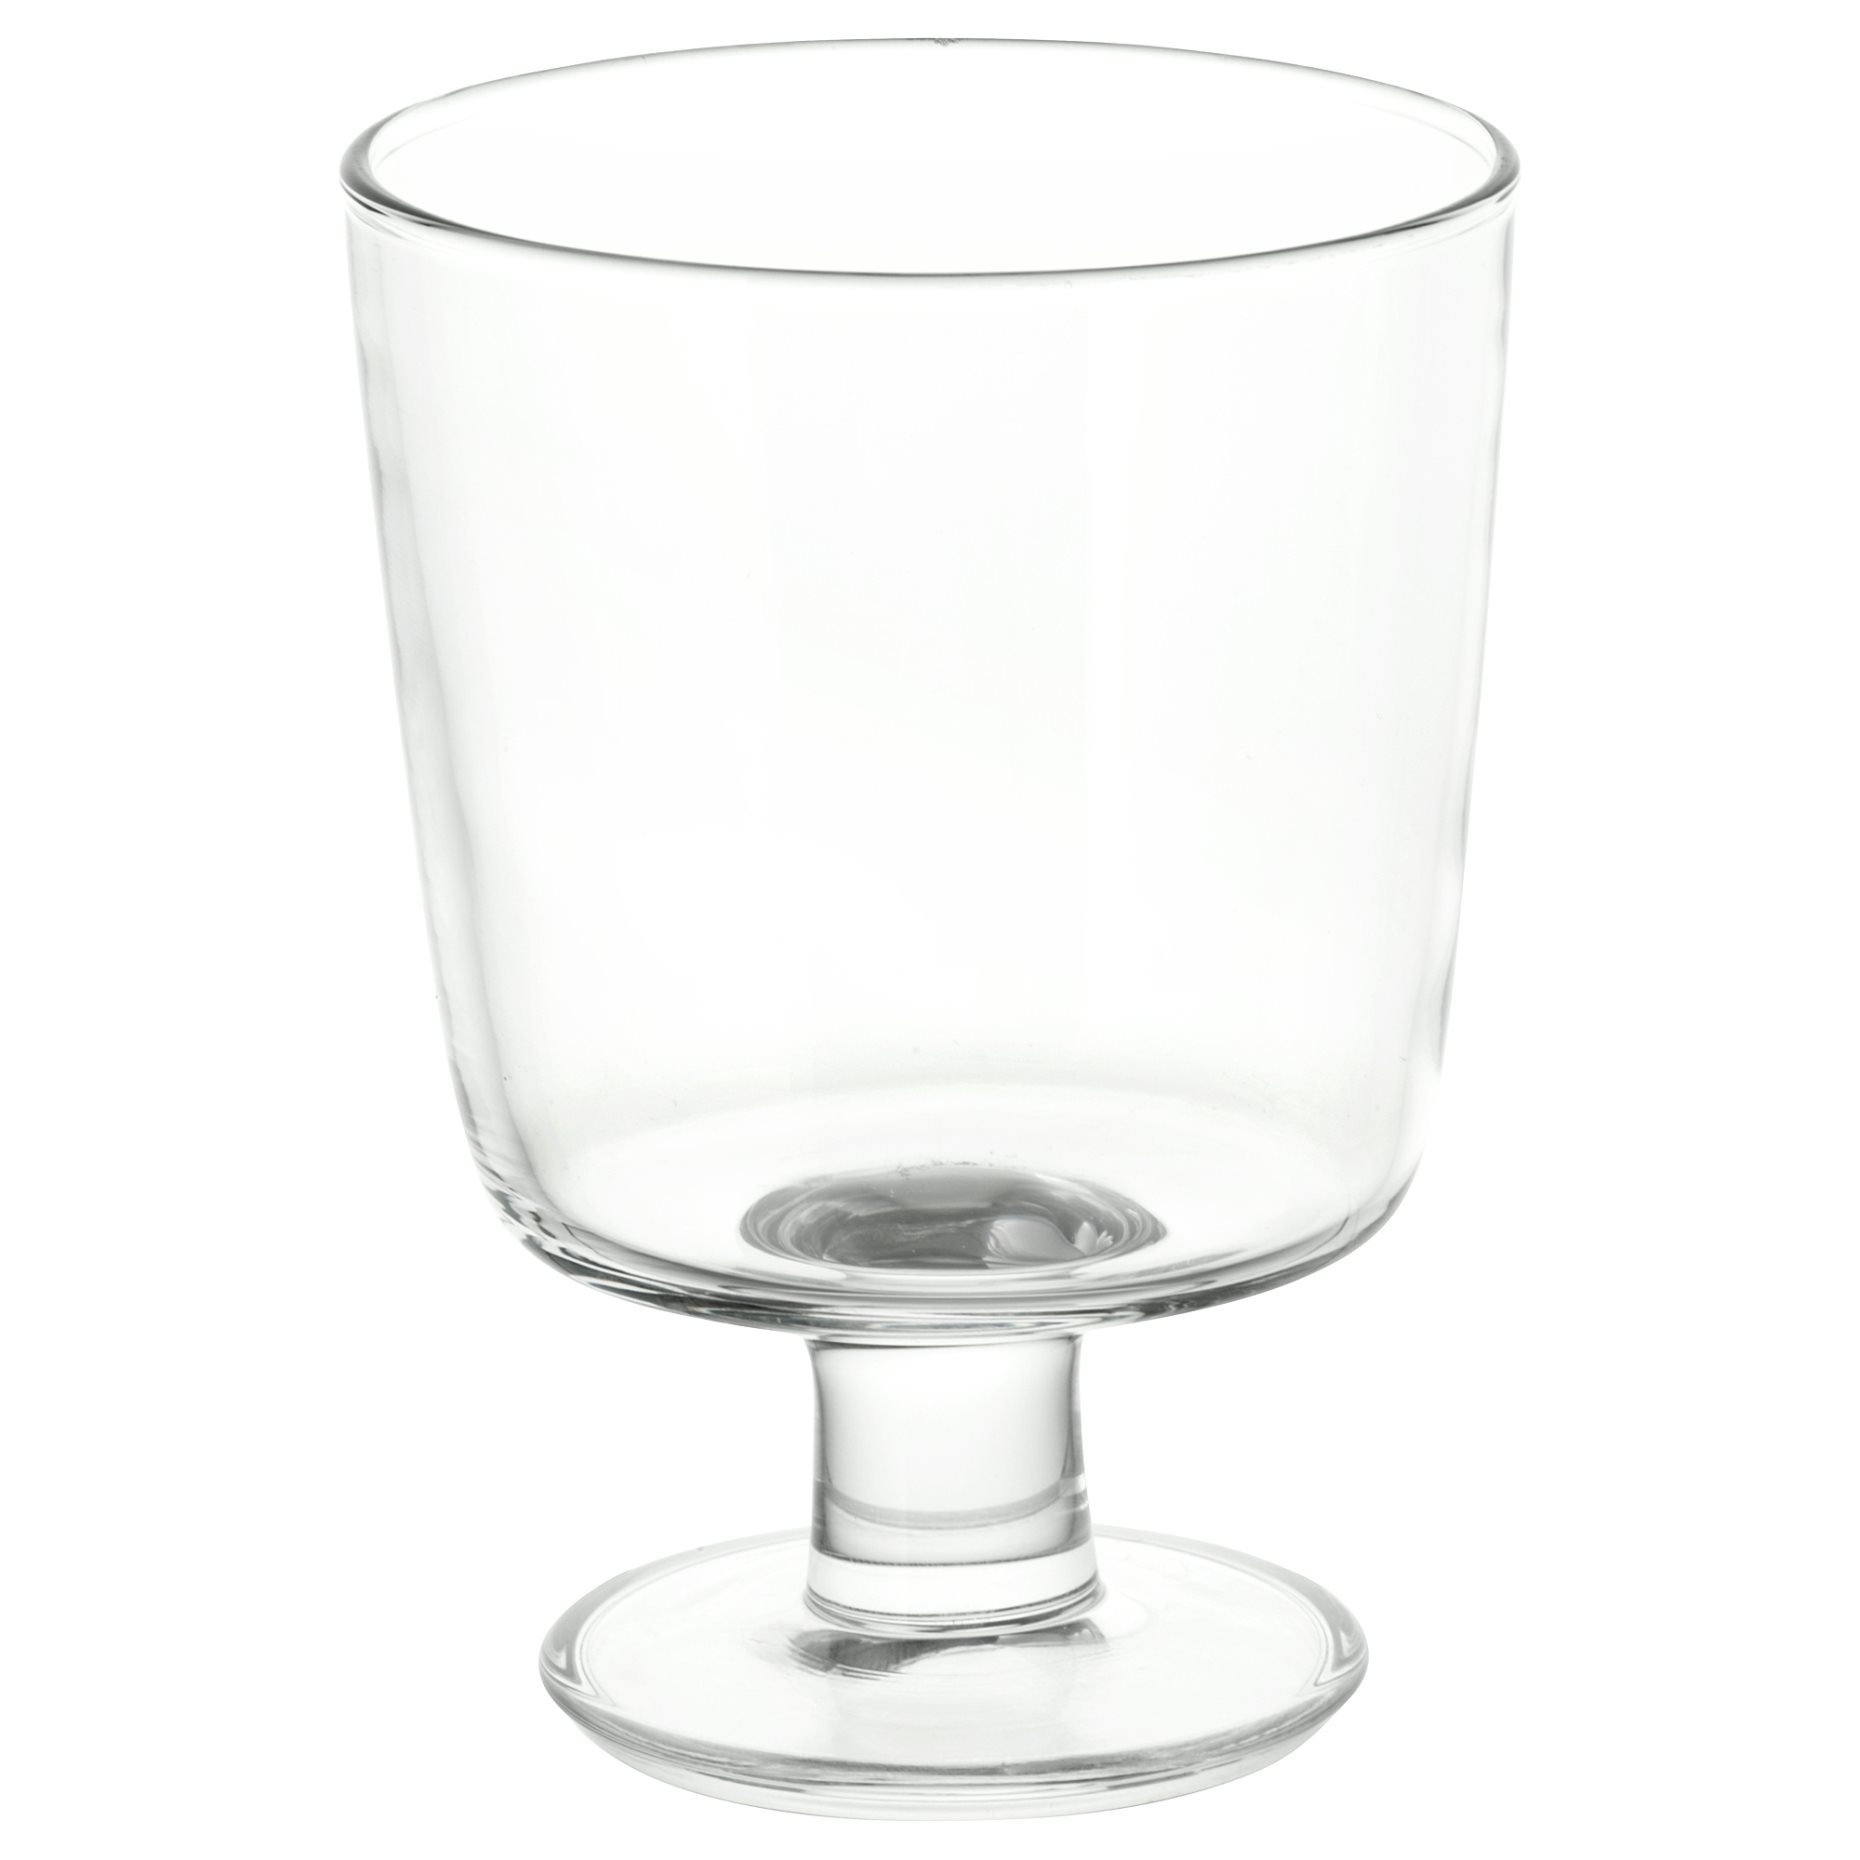 IKEA 365+, wine glass, 702.783.63